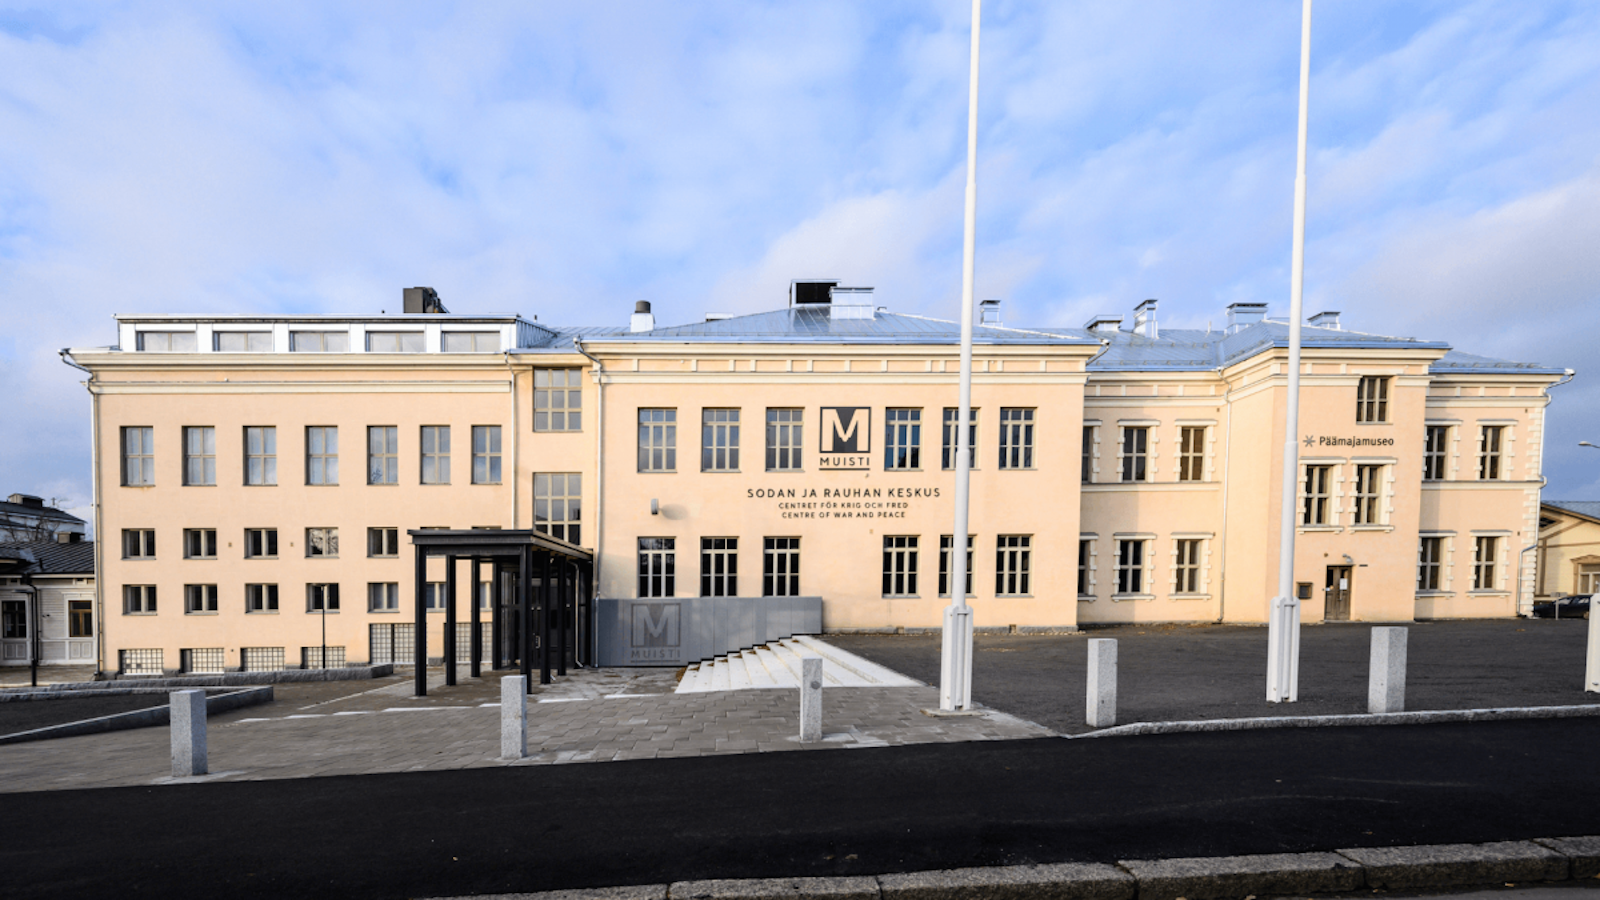 Sodan ja rauhan keskus Muisti Mikkelissä kertoo sodan vaikutuksista ihmisiin viimeisintä teknologiaa käyttäen.